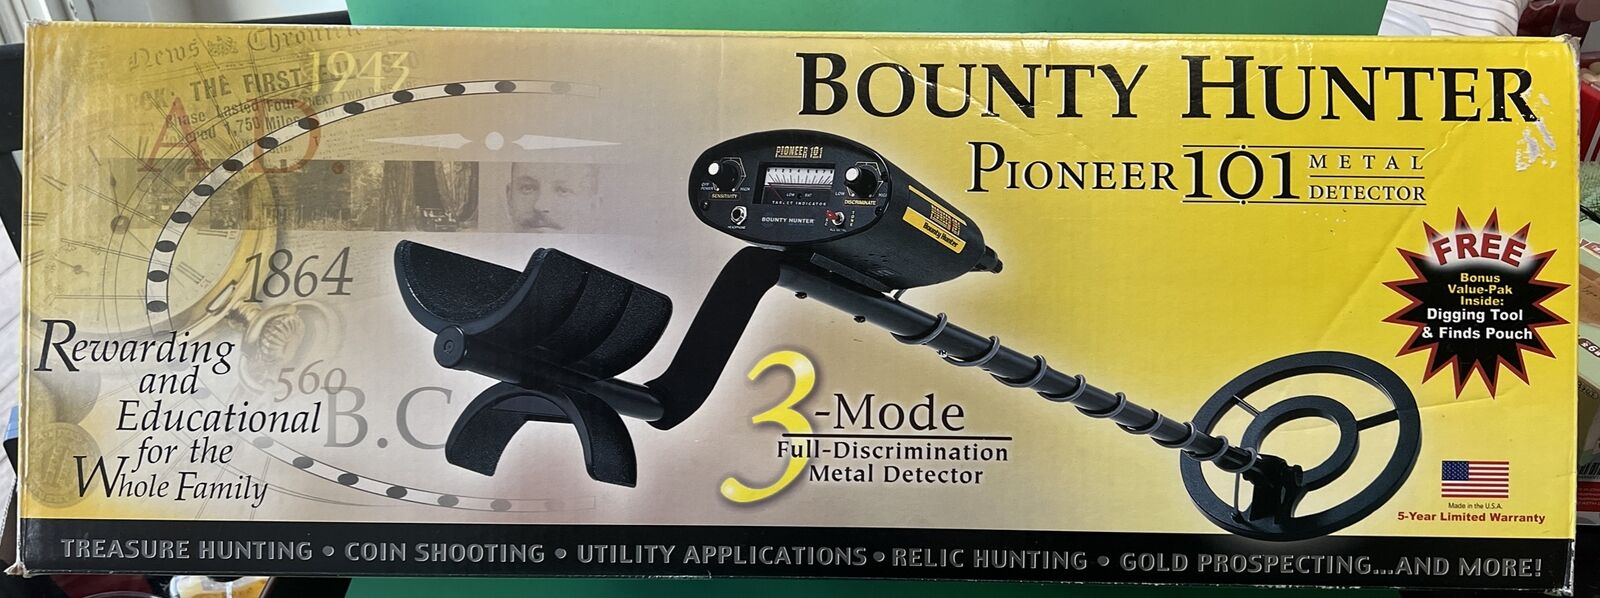 Vintage Metal Detector - Pioneer 101 Bounty Hunter 